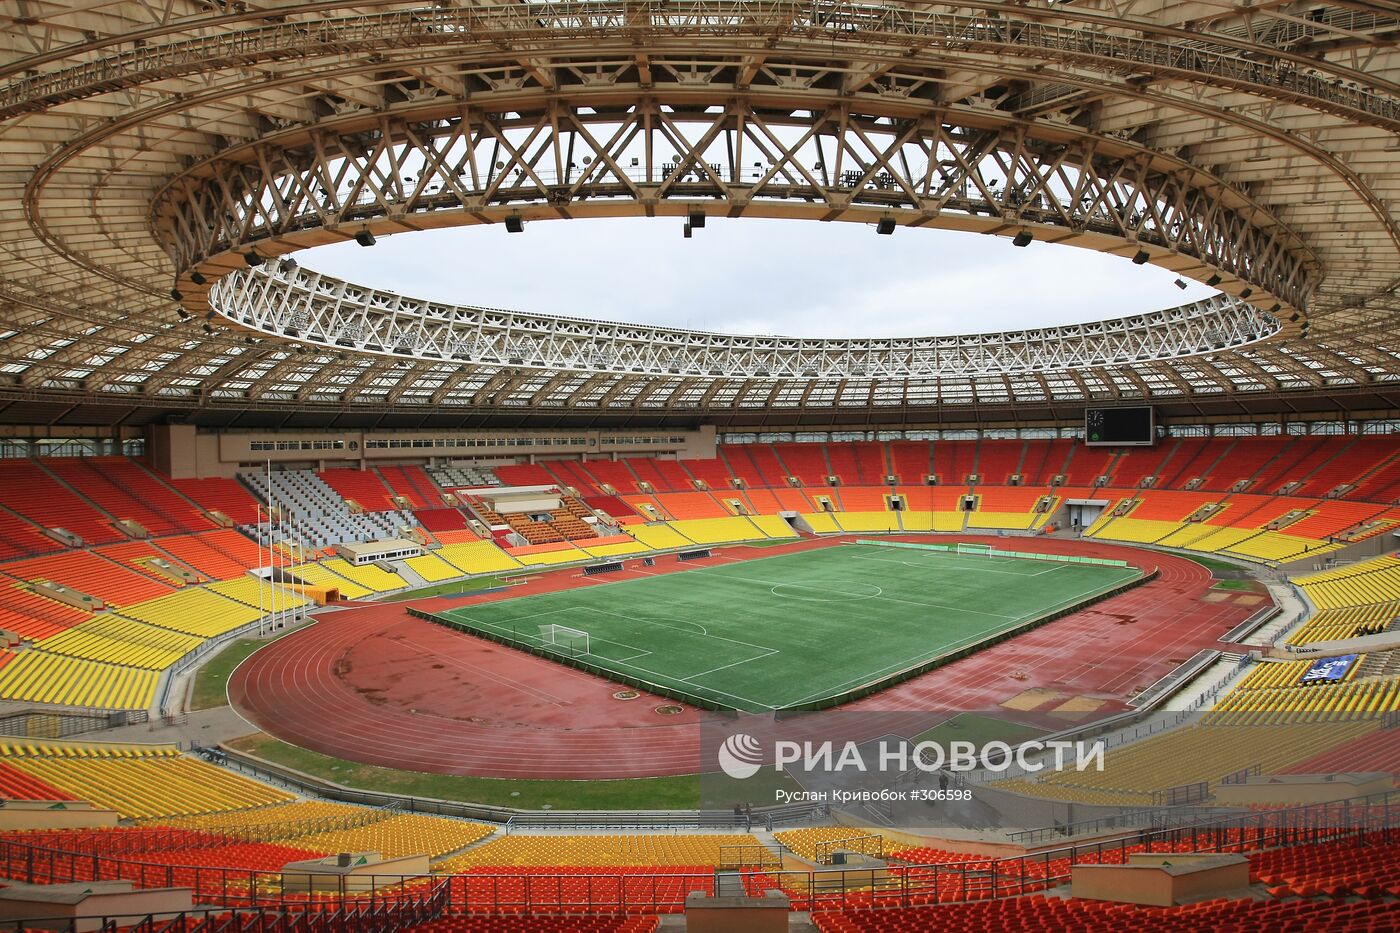 Большая спортивная арена Олимпийского комплекса "Лужники"